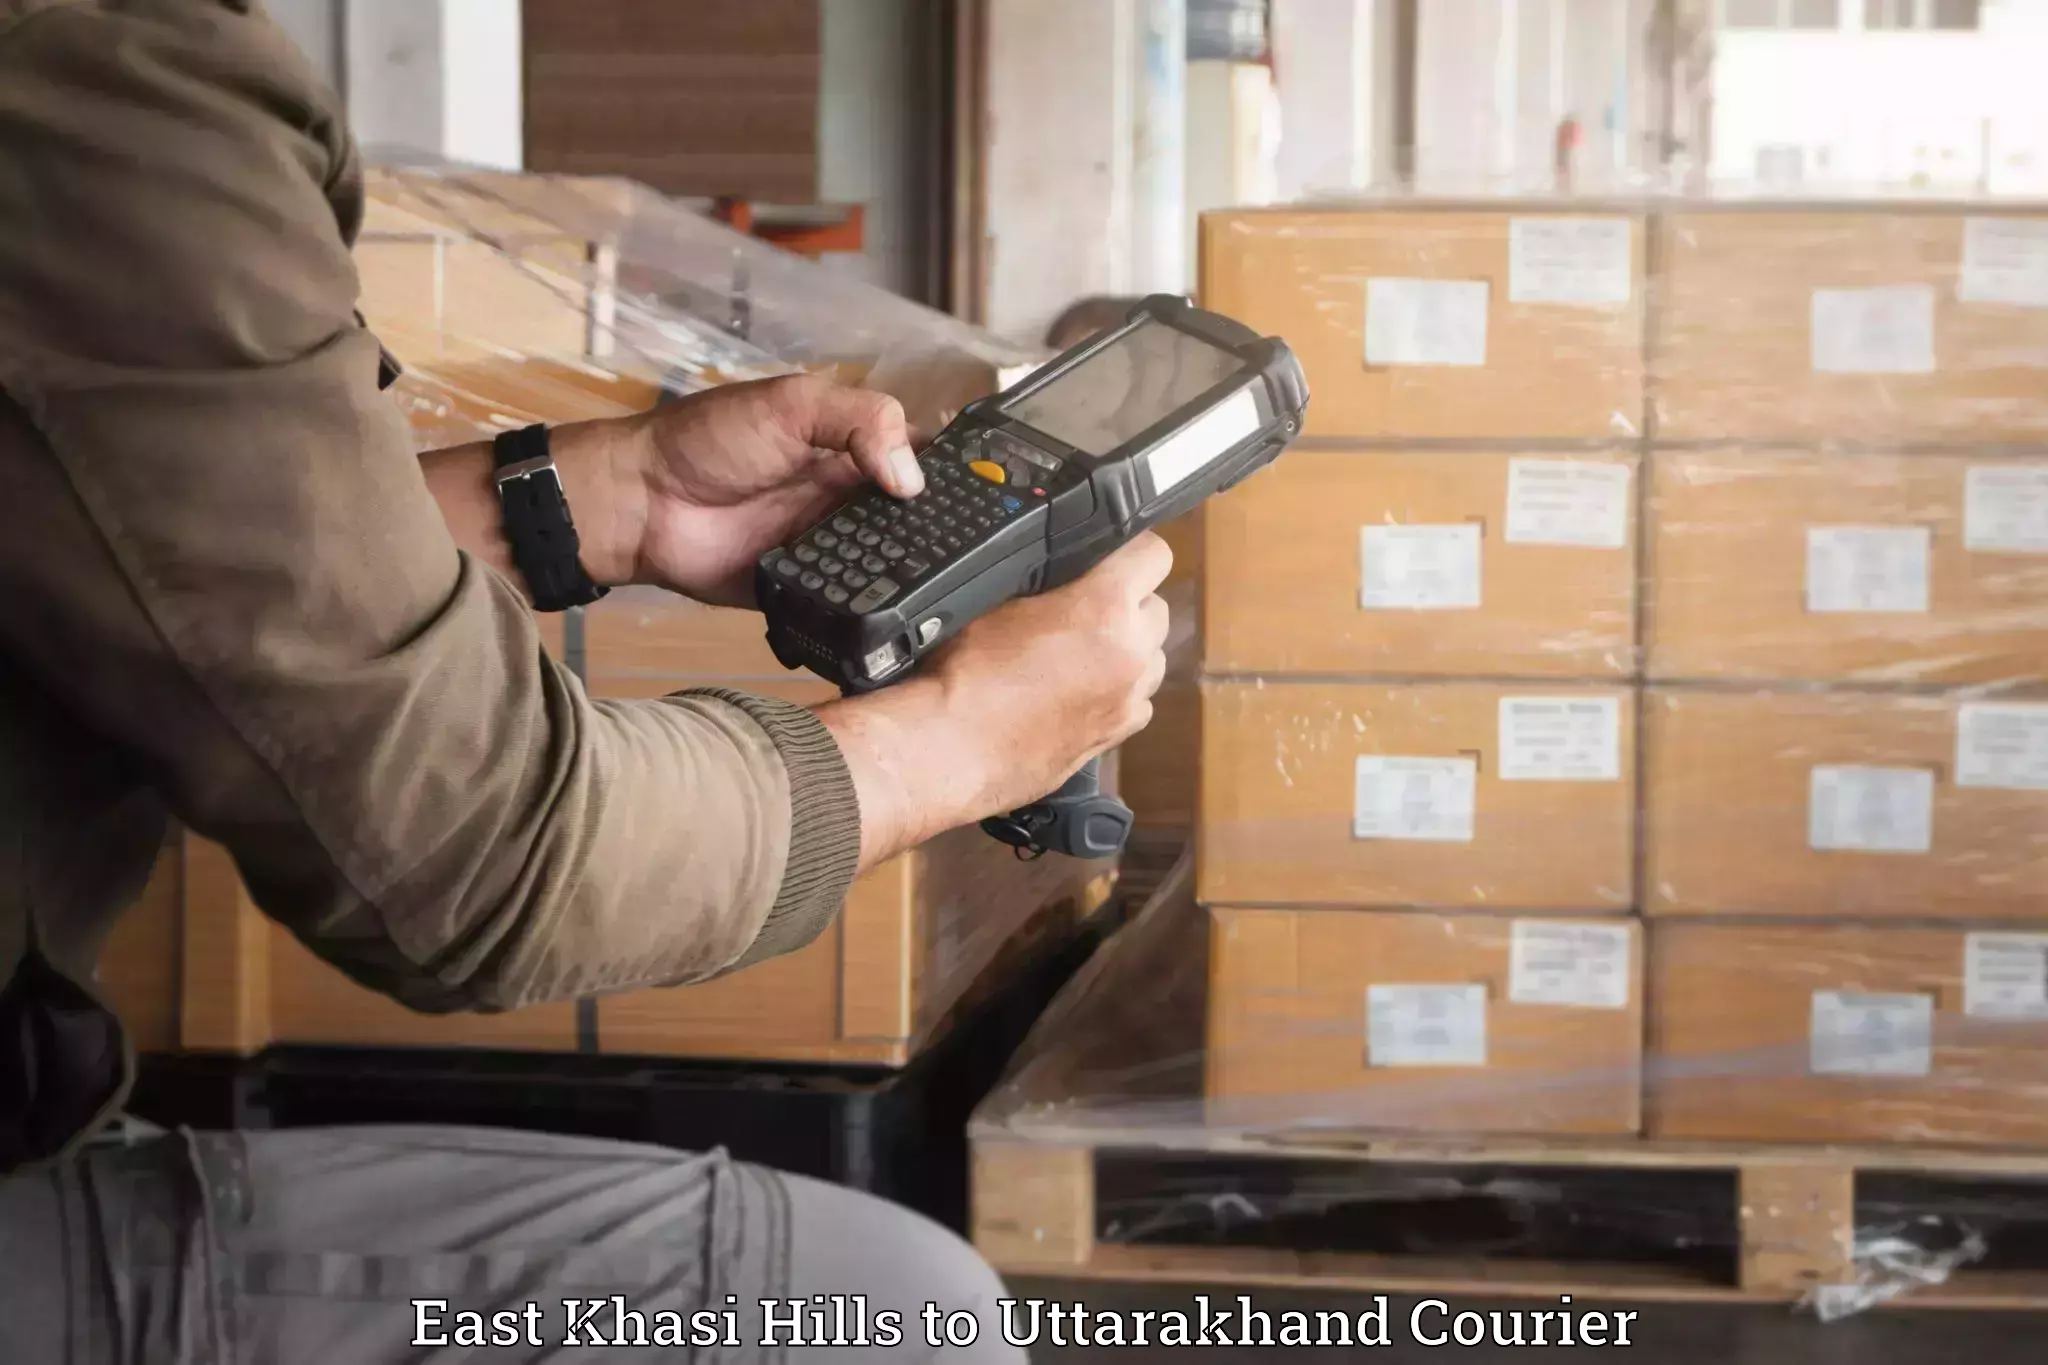 Luggage transport deals East Khasi Hills to Uttarakhand